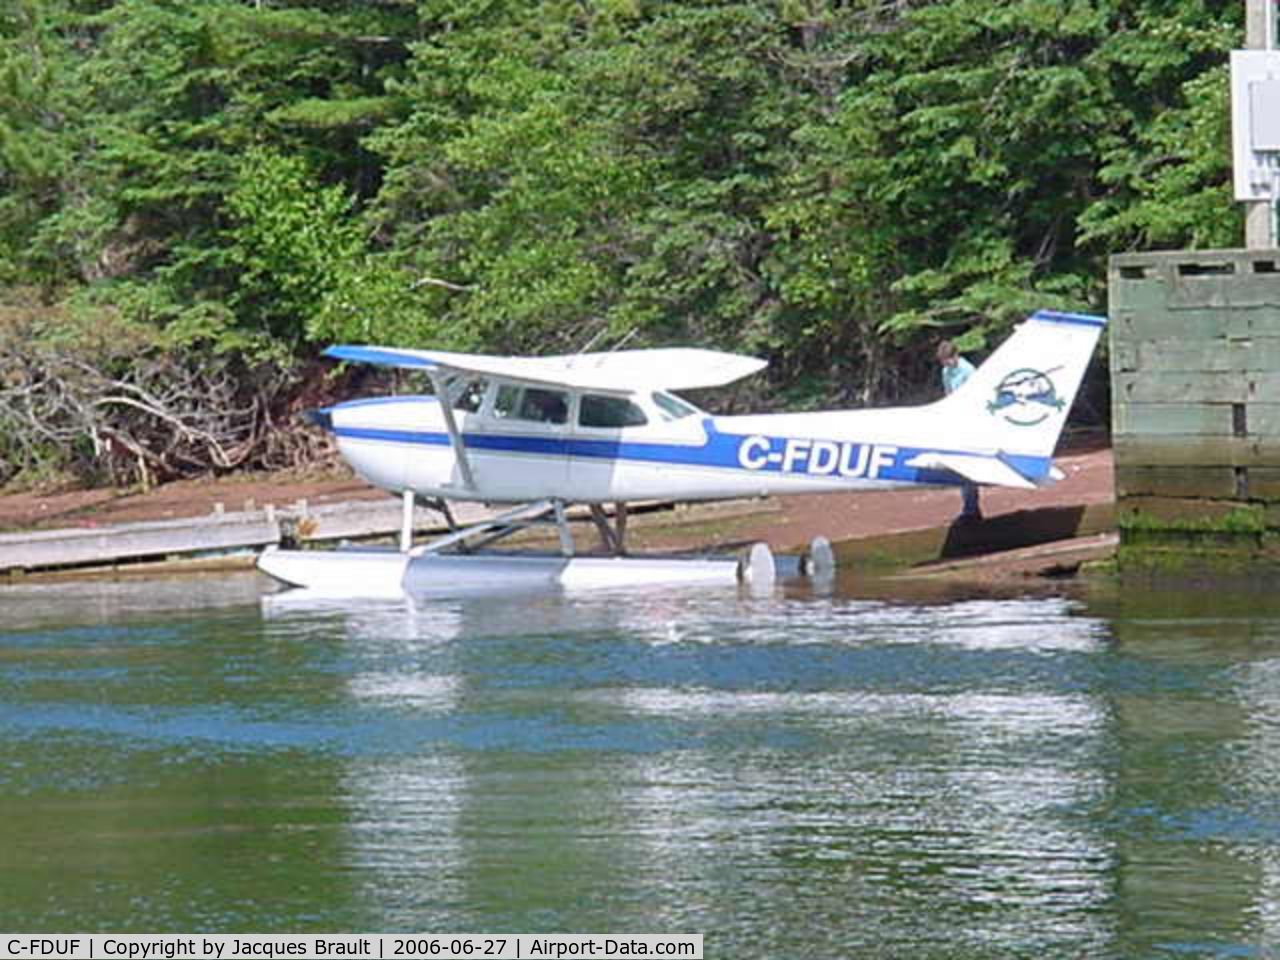 C-FDUF, 1972 Cessna 172L C/N 17259993, Murray Bay, Prince Edward Island, Canada. 27 June 2006